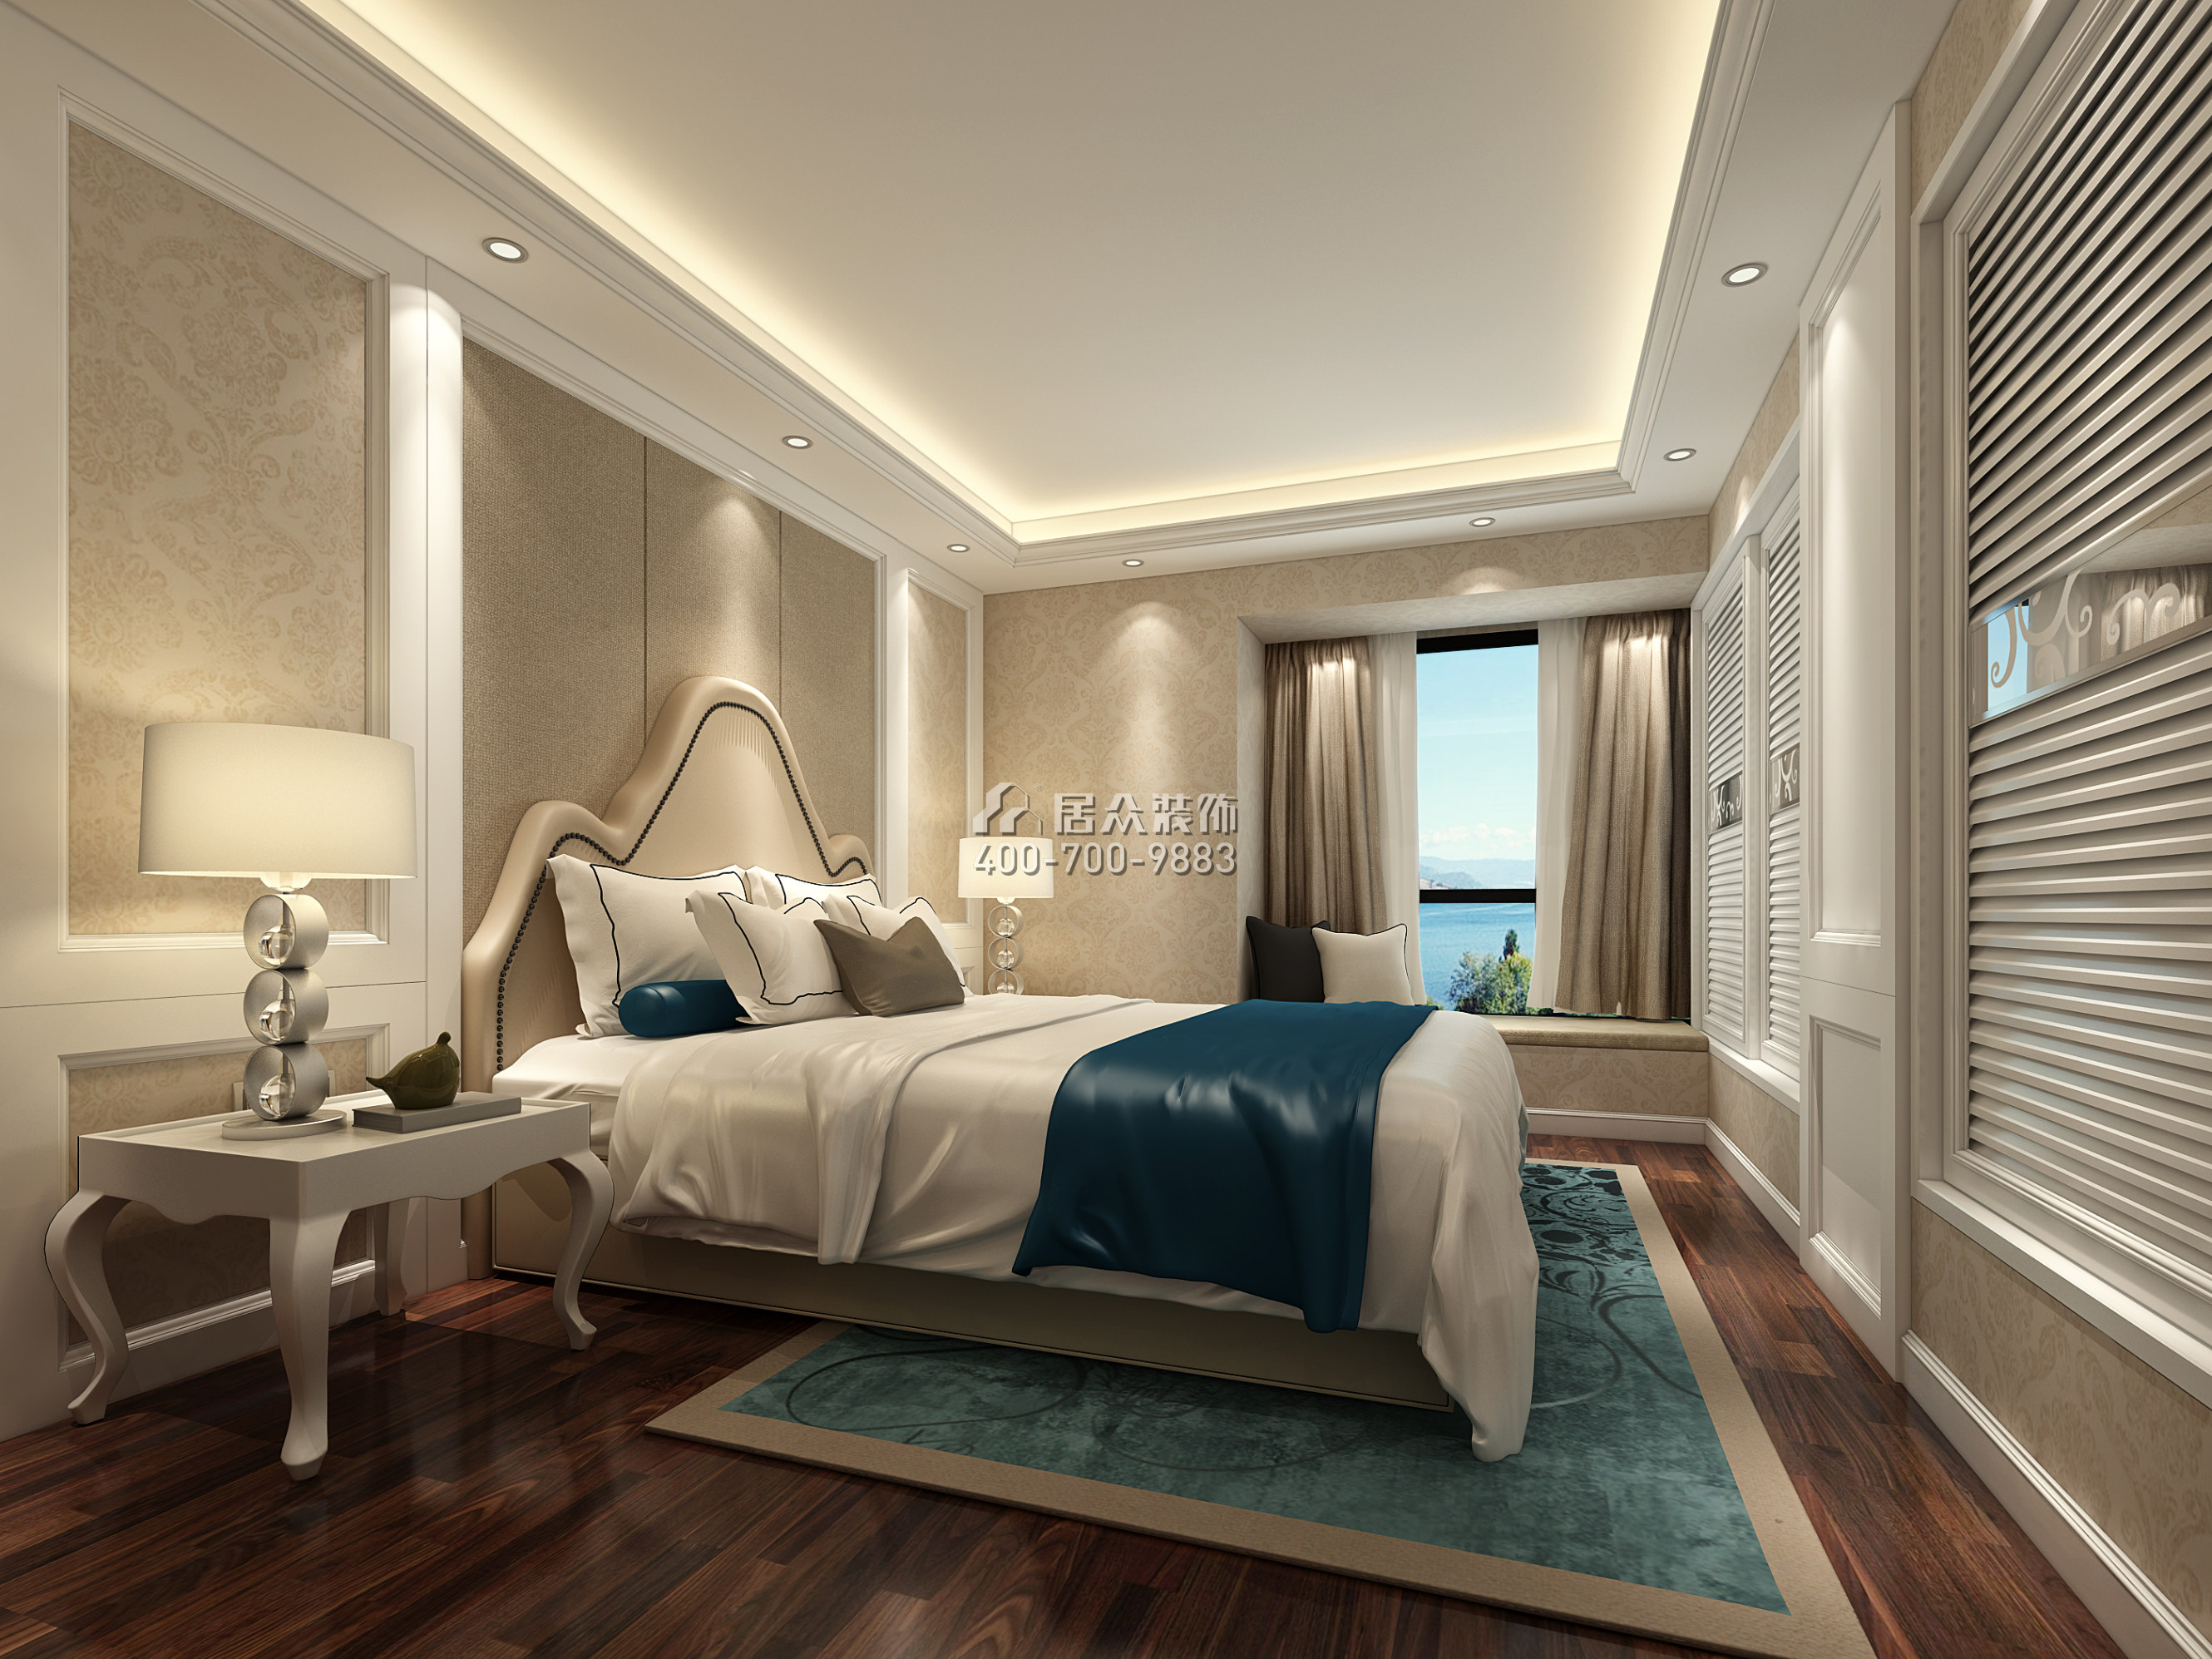 鼎太风华五期112平方米欧式风格平层户型卧室装修效果图